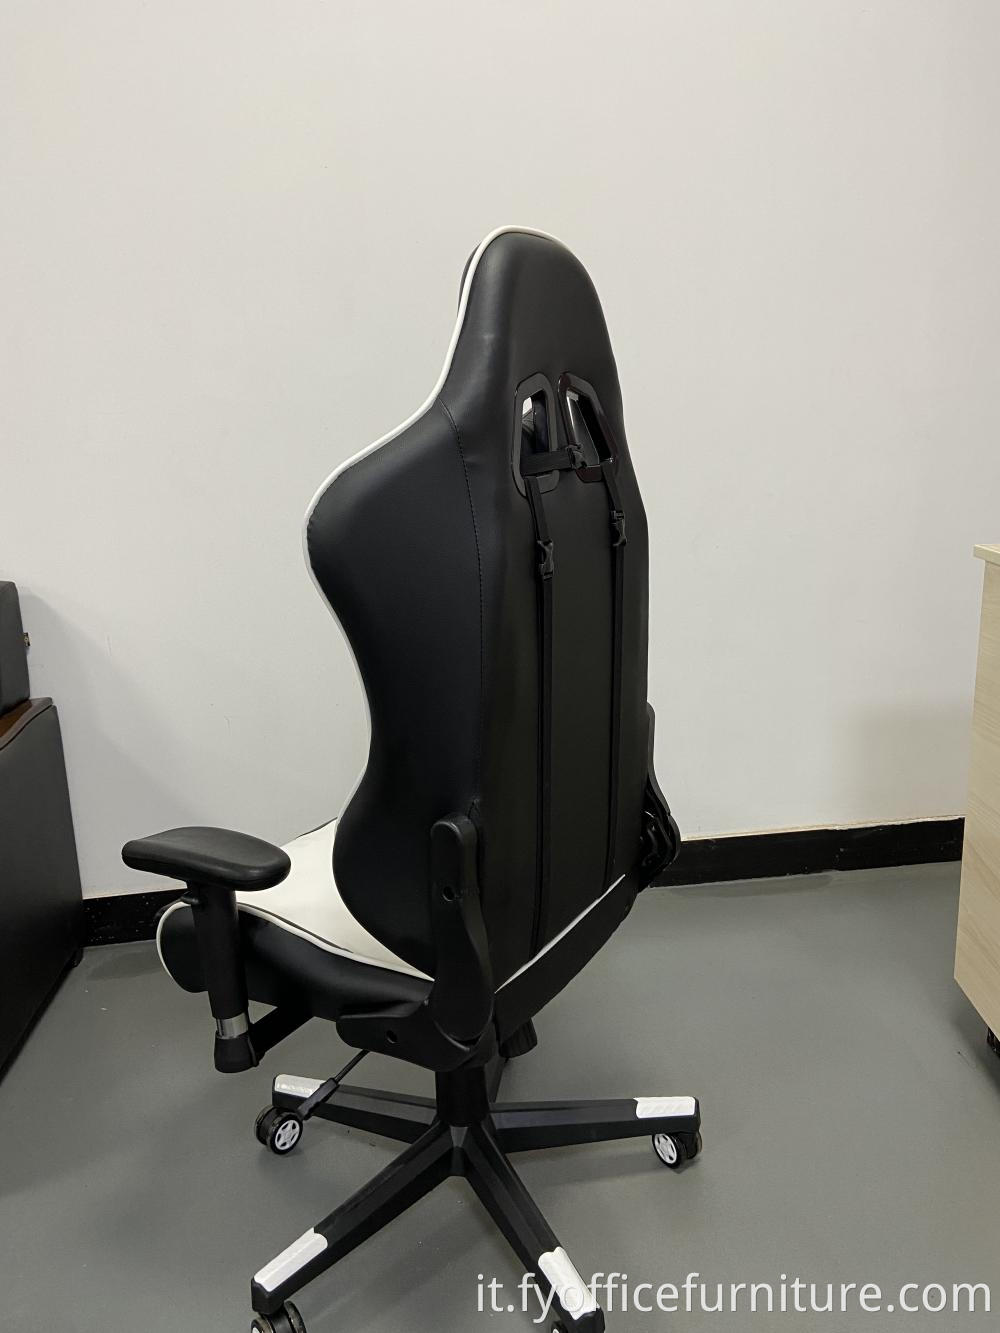 Ergonomic gaming chair